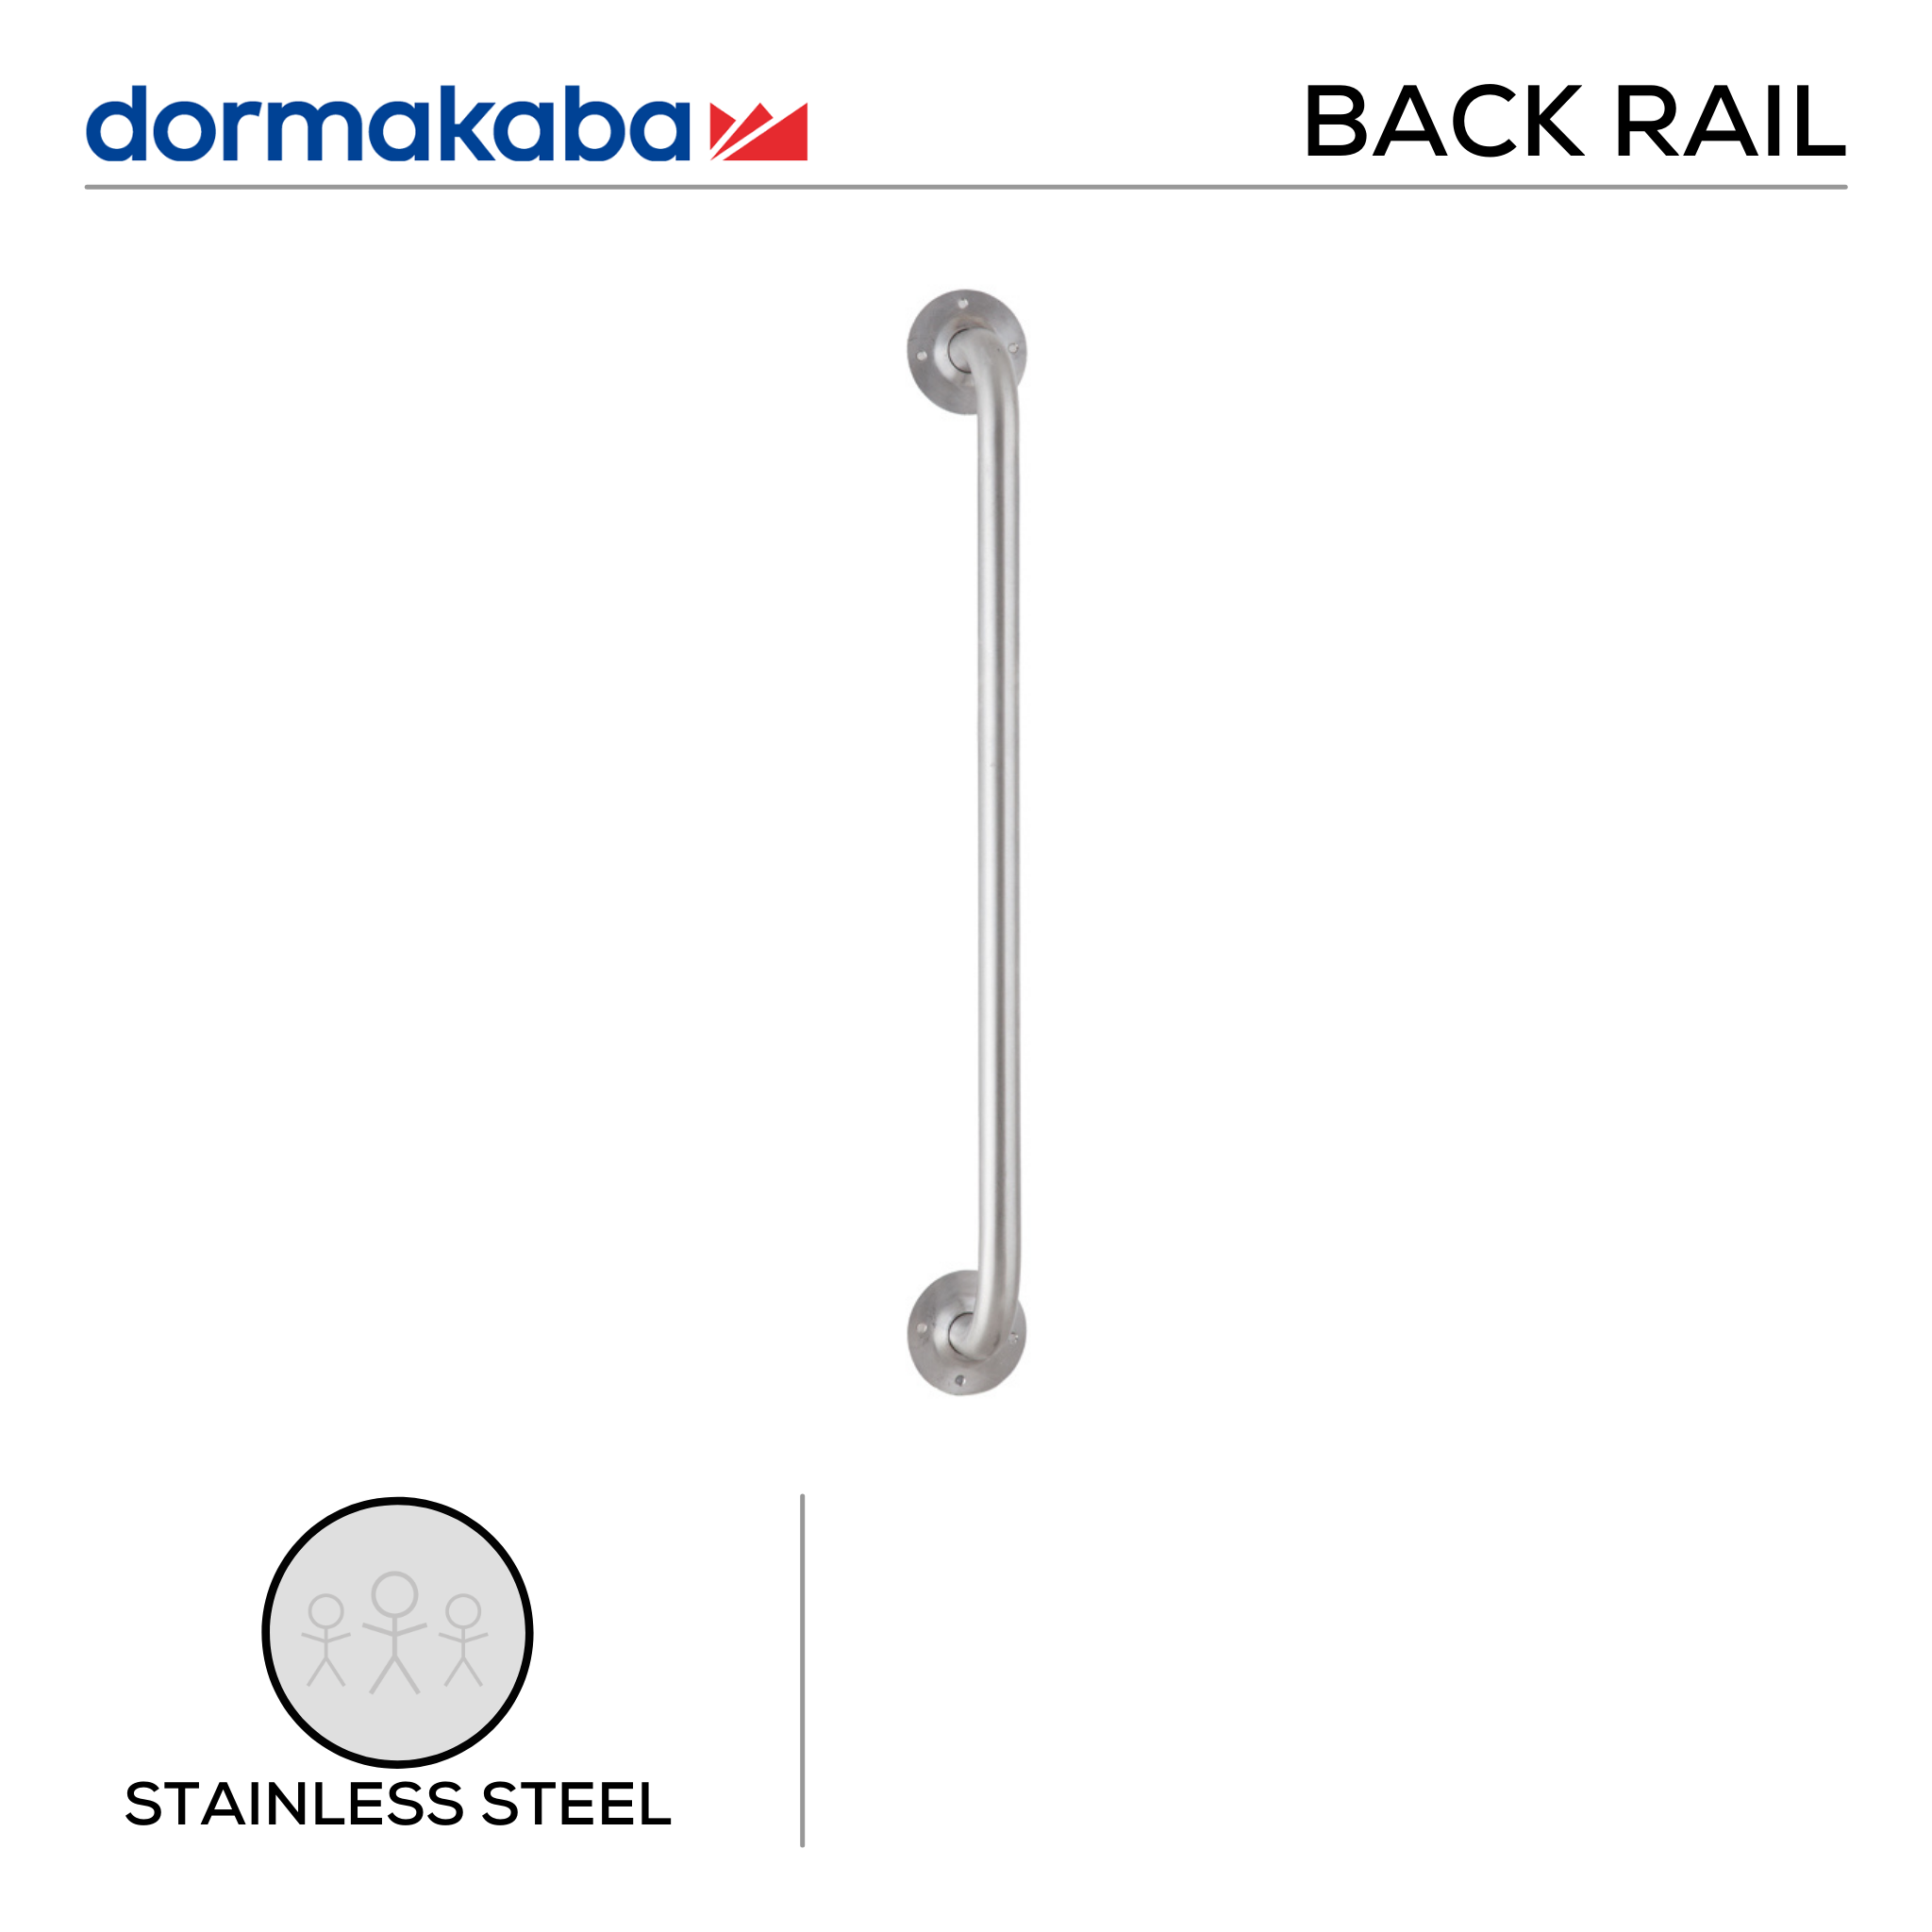 DGR-SS-151, Back Rail, Flushvalve, 800mm (l) x 80mm (w), Stainless Steel, DORMAKABA